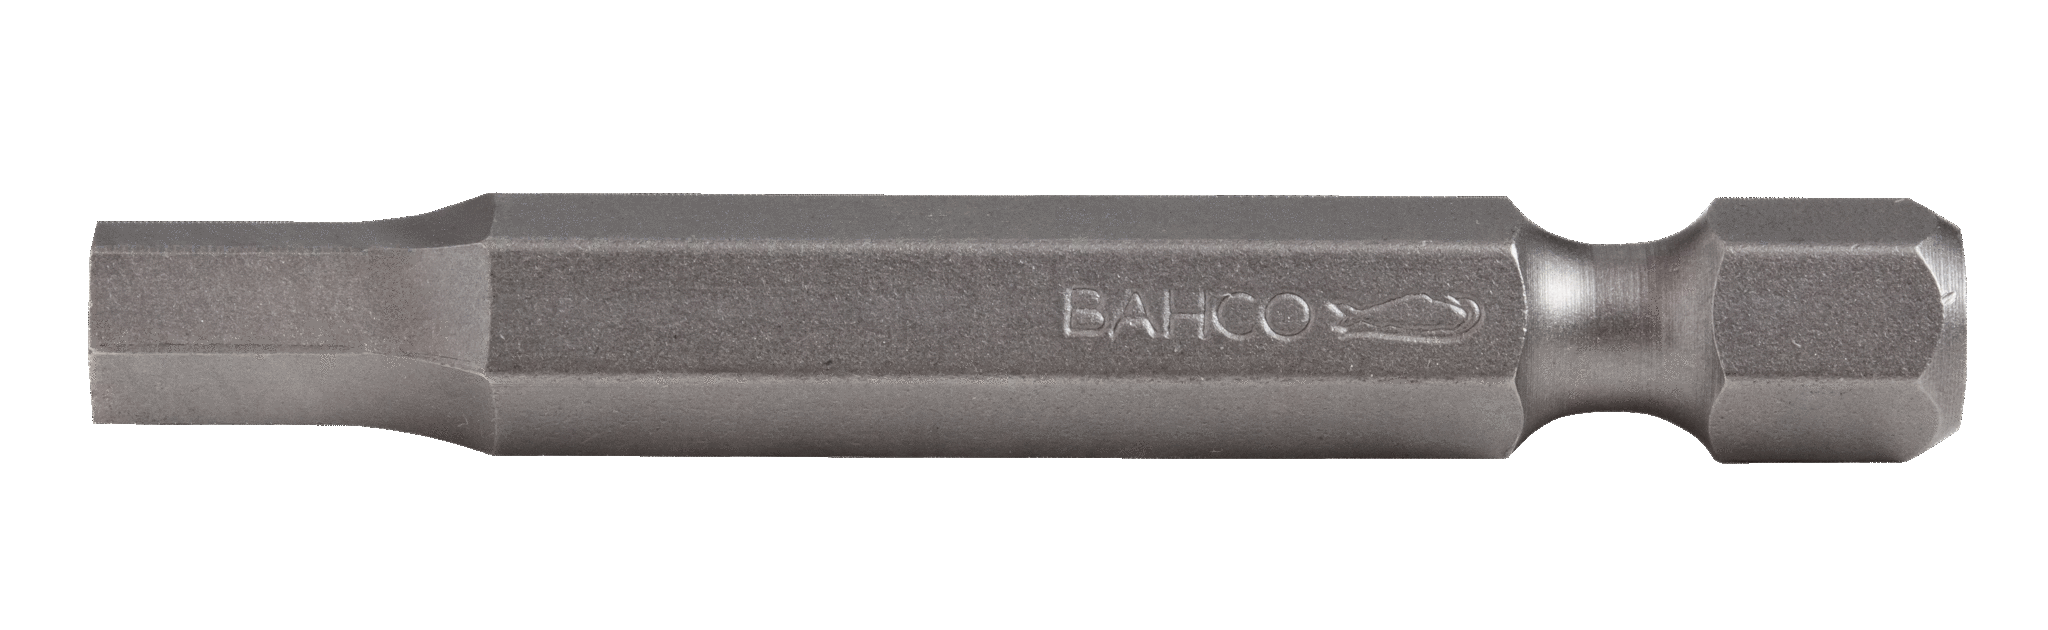 картинка Стандартные биты для отверток под винты с шестигранной головкой, дюймовые размеры, 50 мм BAHCO 59S/50H1/16 от магазина "Элит-инструмент"